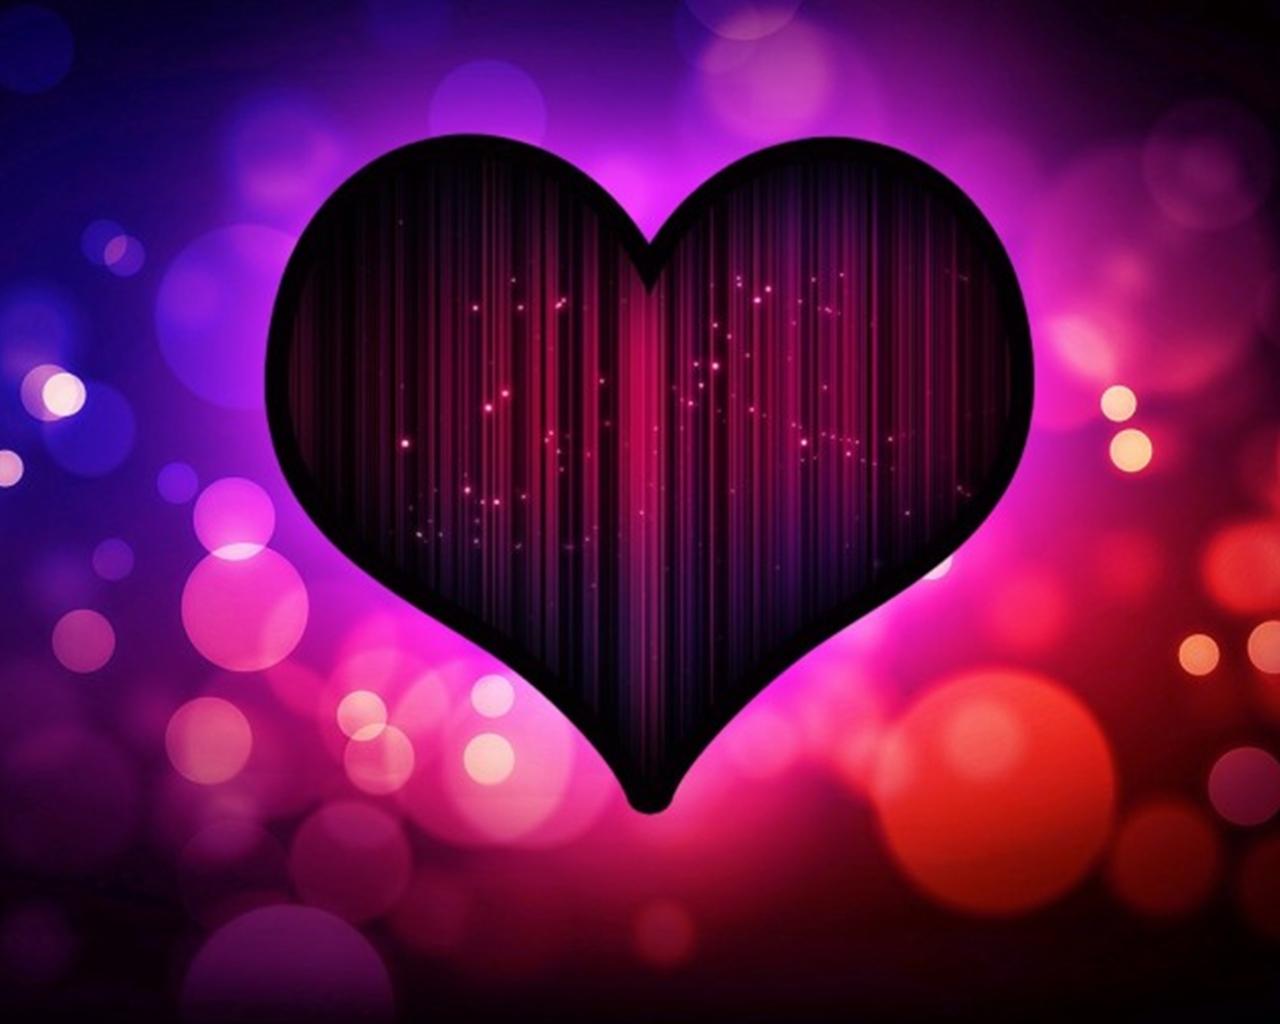 Neon Heart Desktop Wallpapers - Top Free Neon Heart Desktop Backgrounds ...